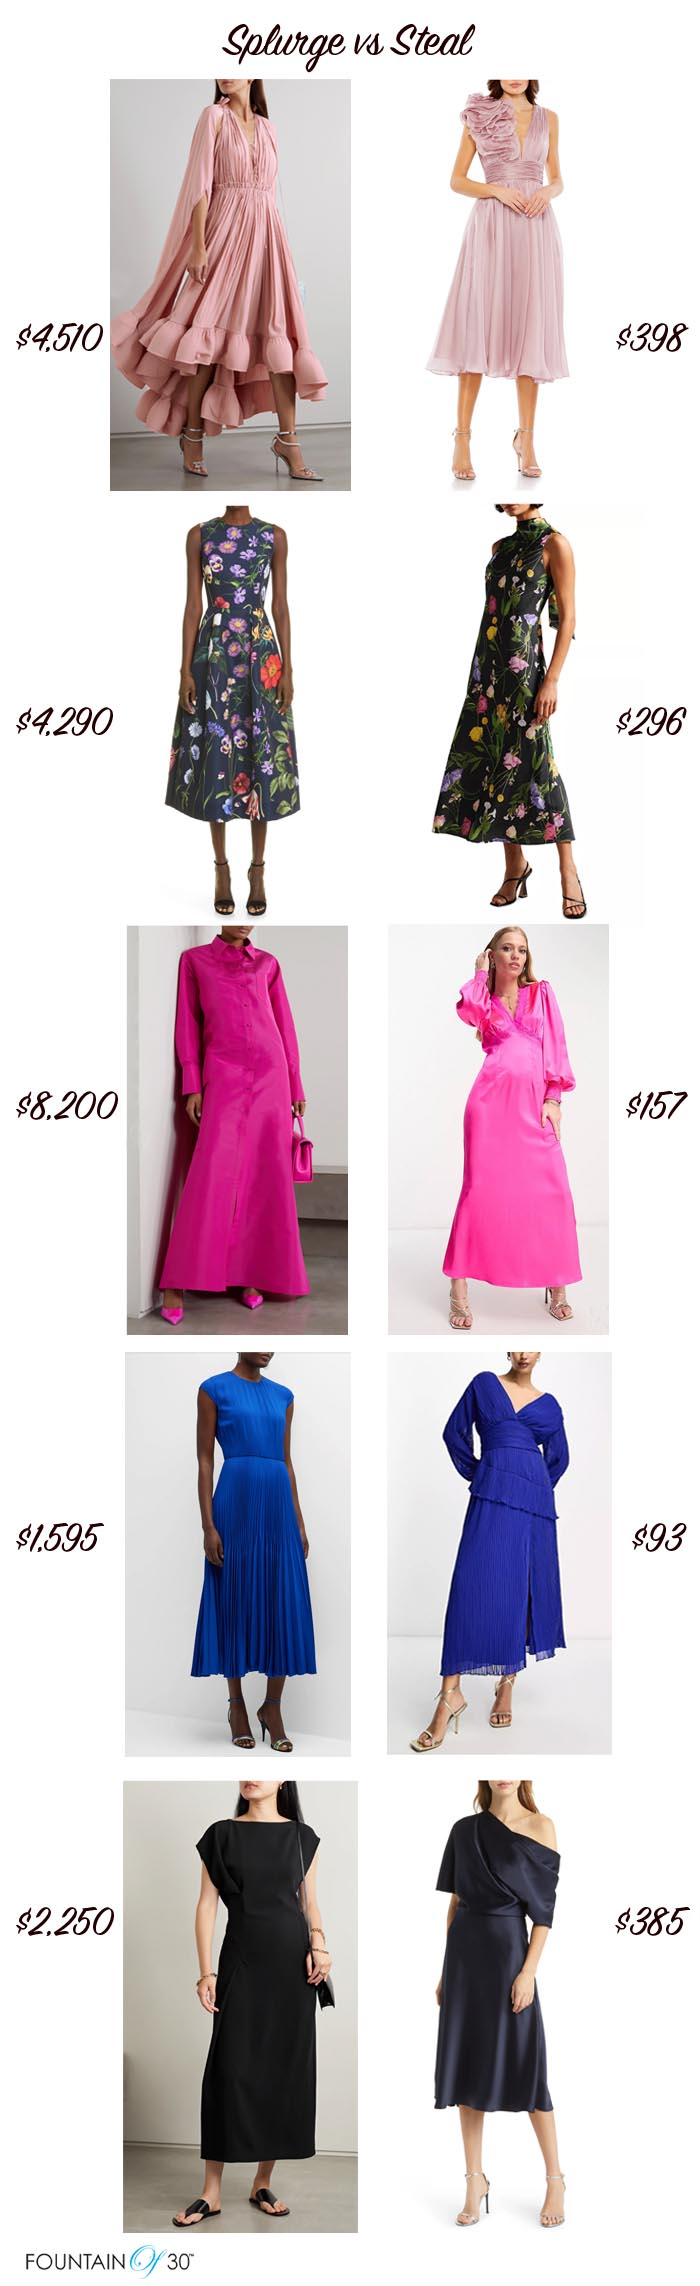 spring dresses for women over 50 fountainof30